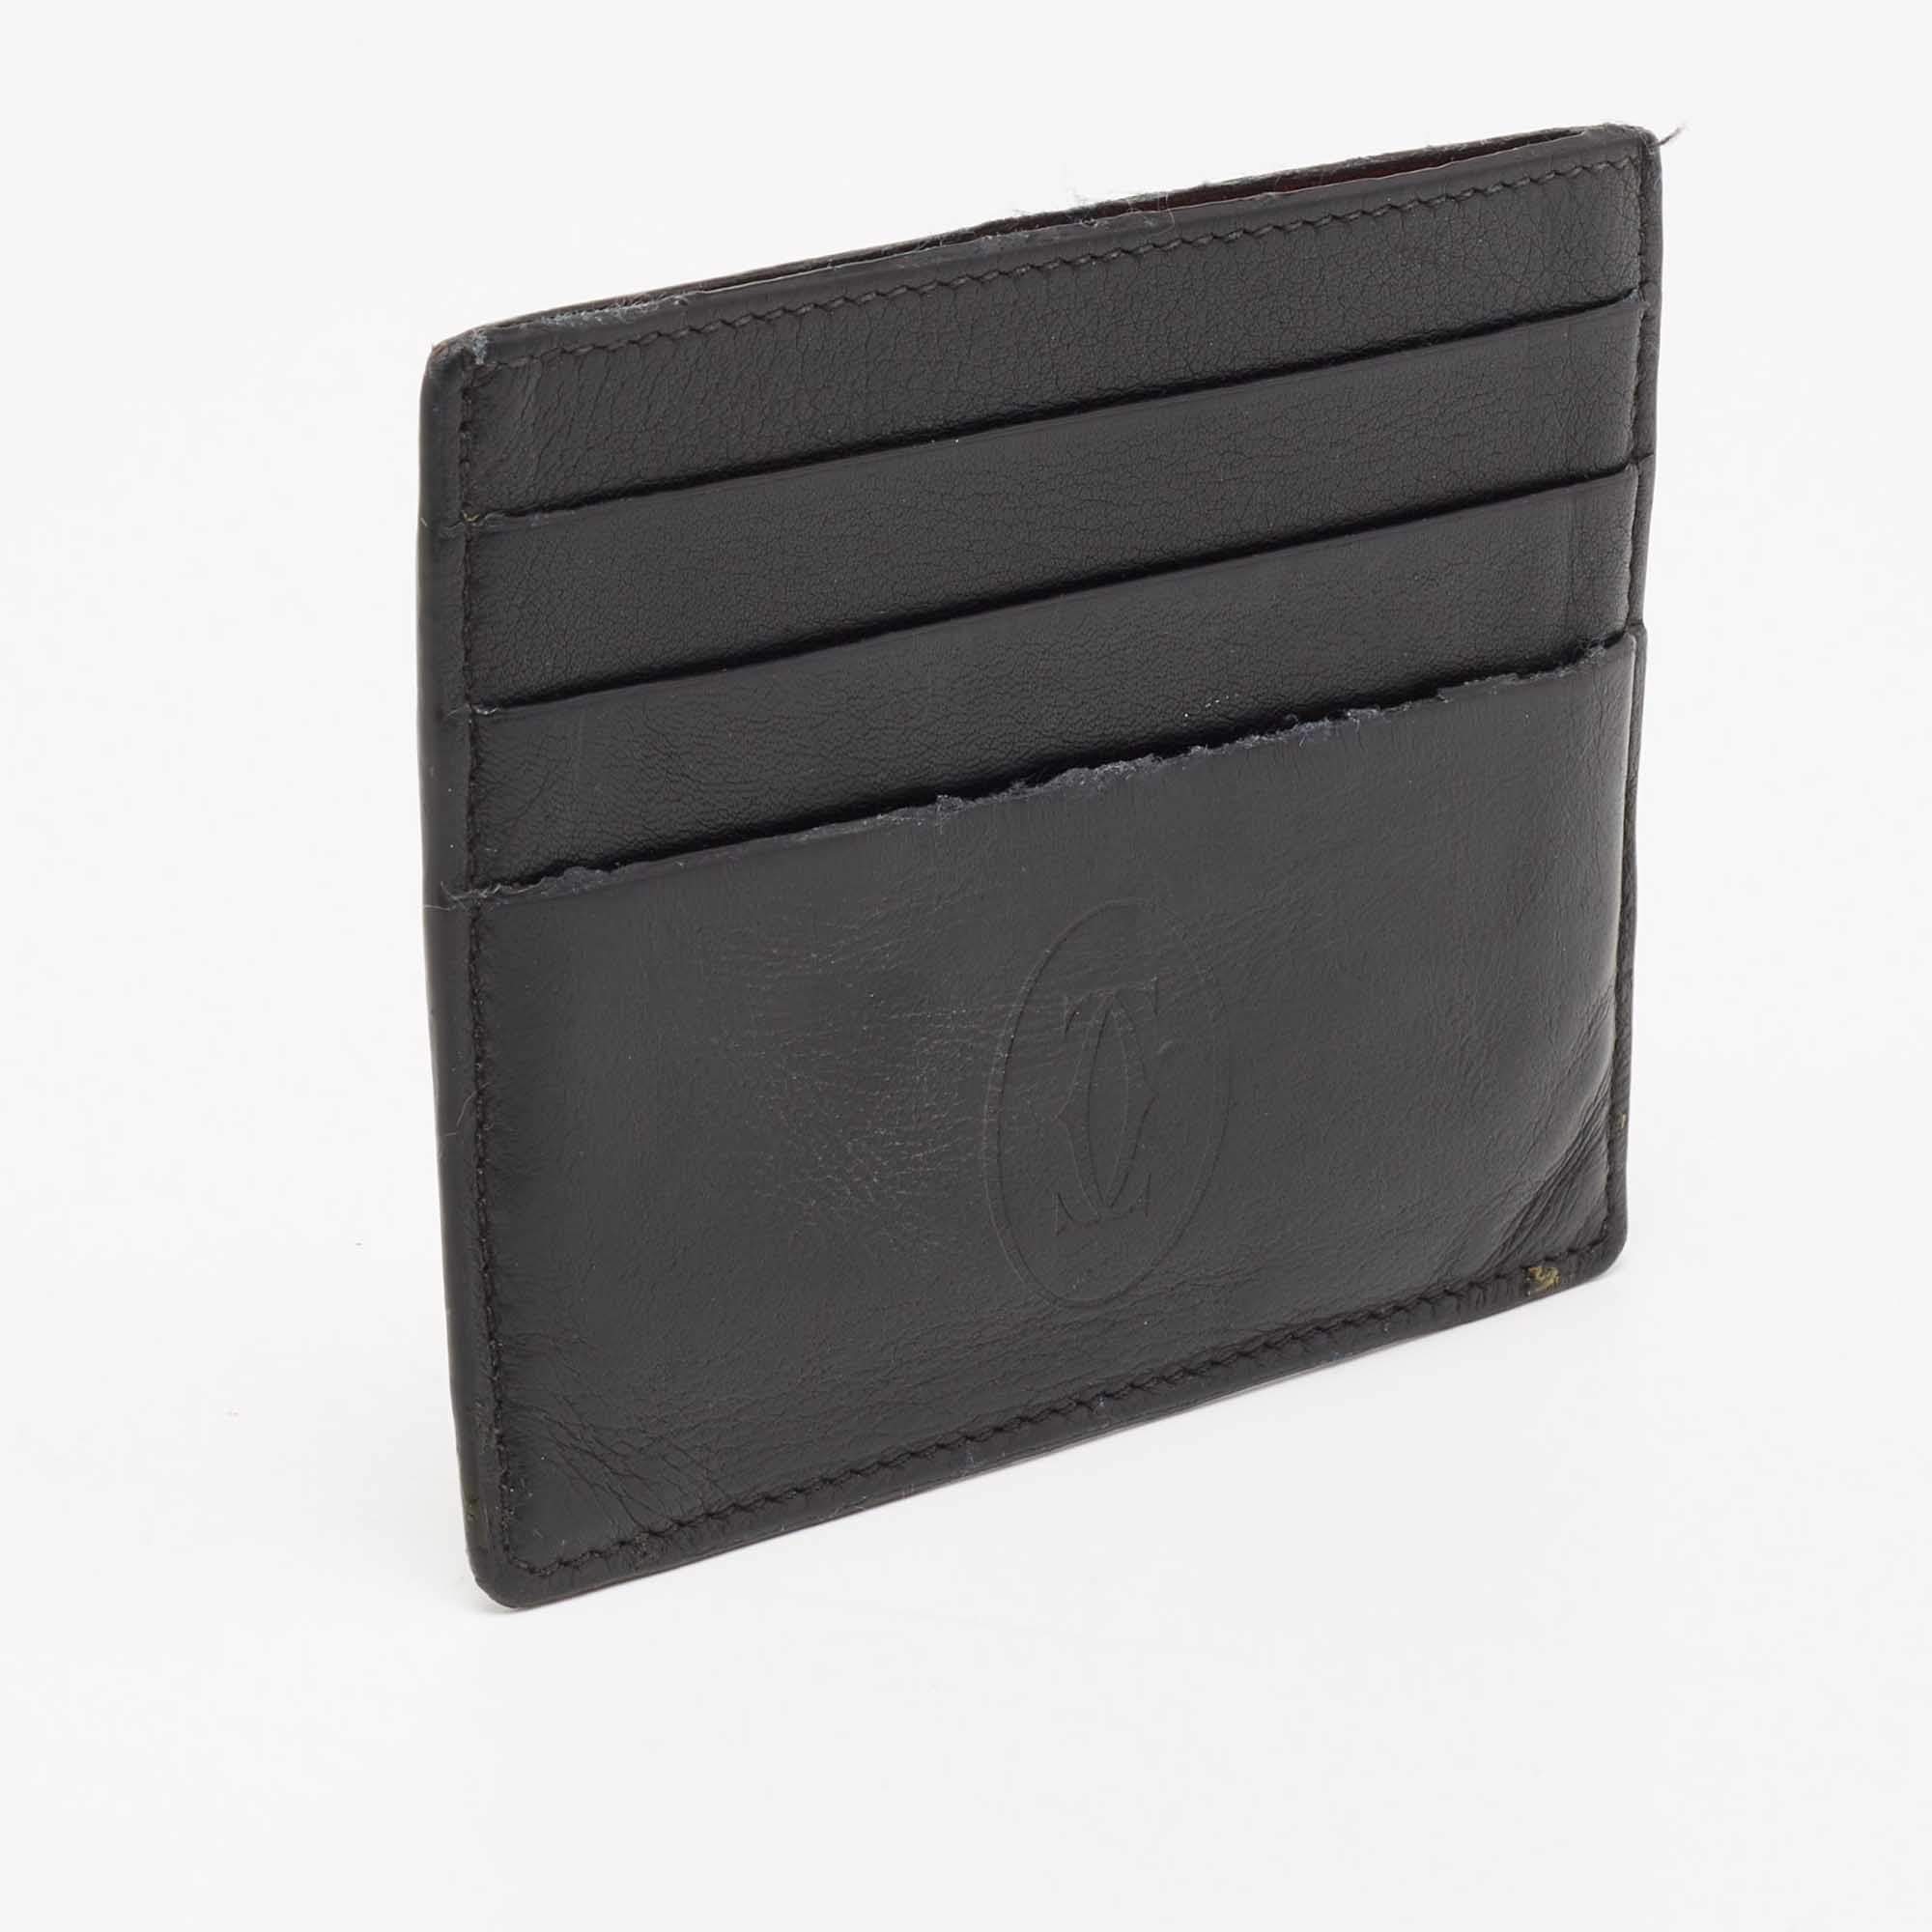 CRL3001806 - Zipped Multi-card Holder, Must de Cartier - Black